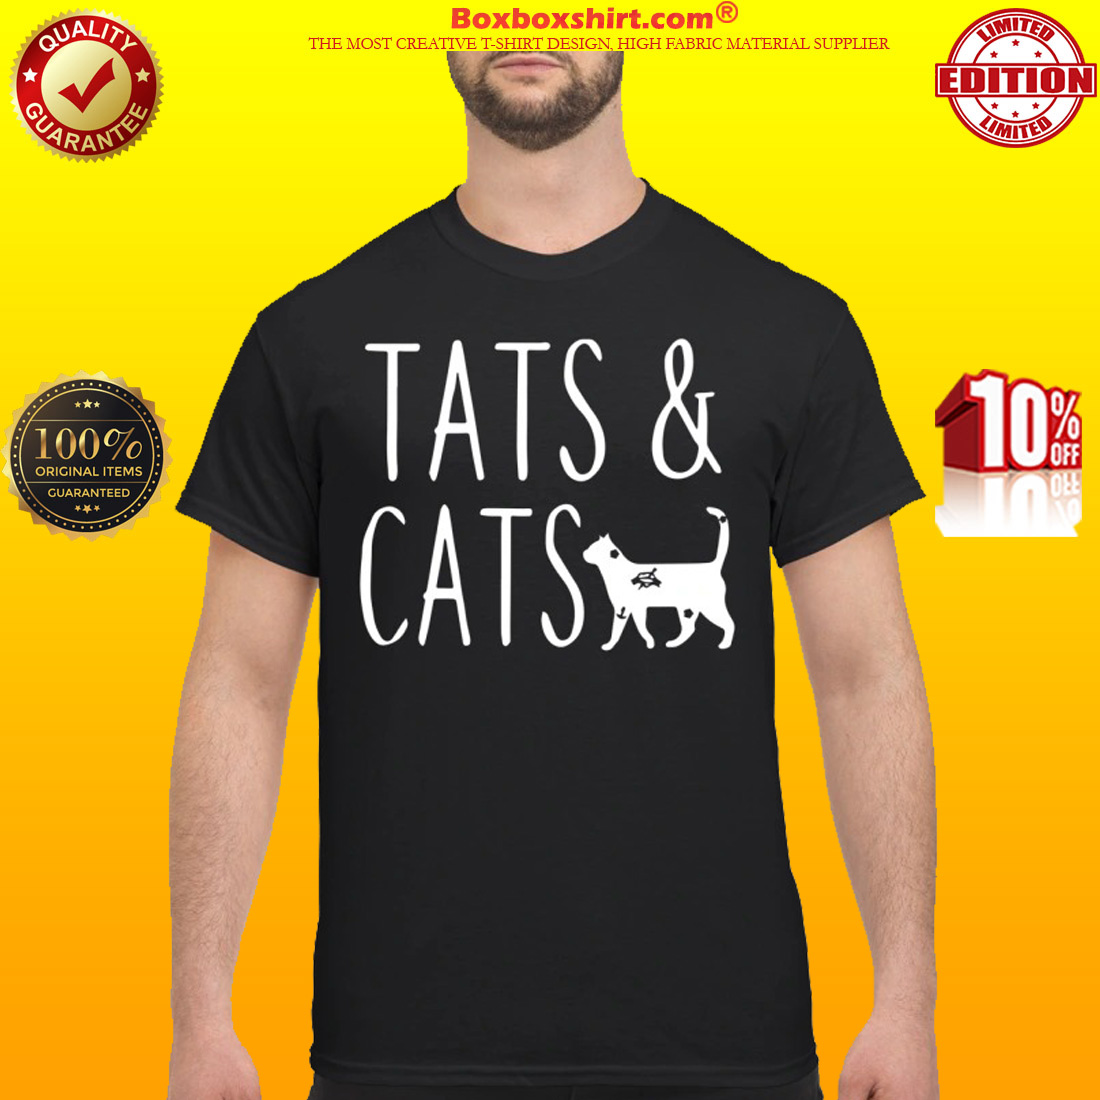 Tats and cats shirt